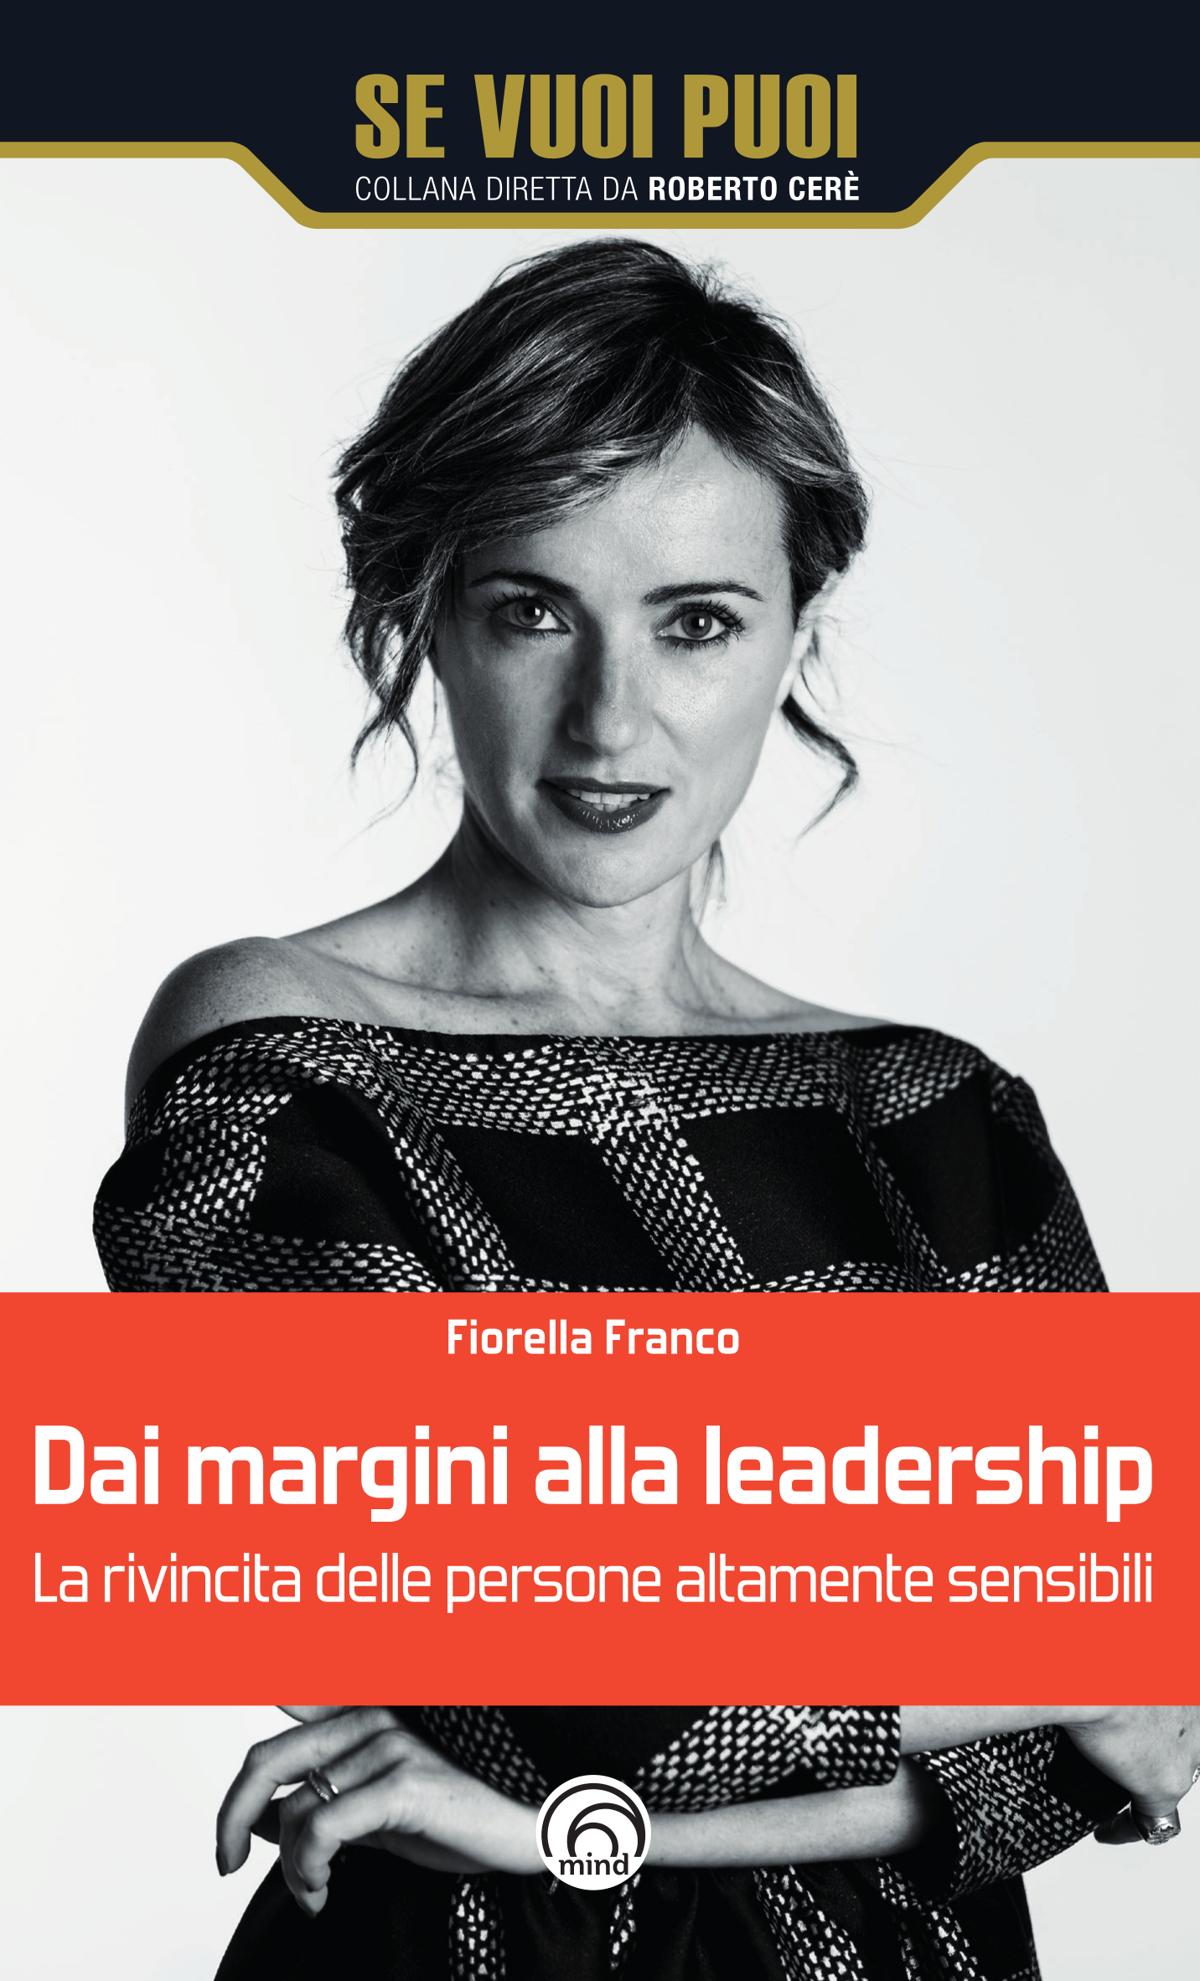 Fiorella Franco, “Dai margini alla leadership”